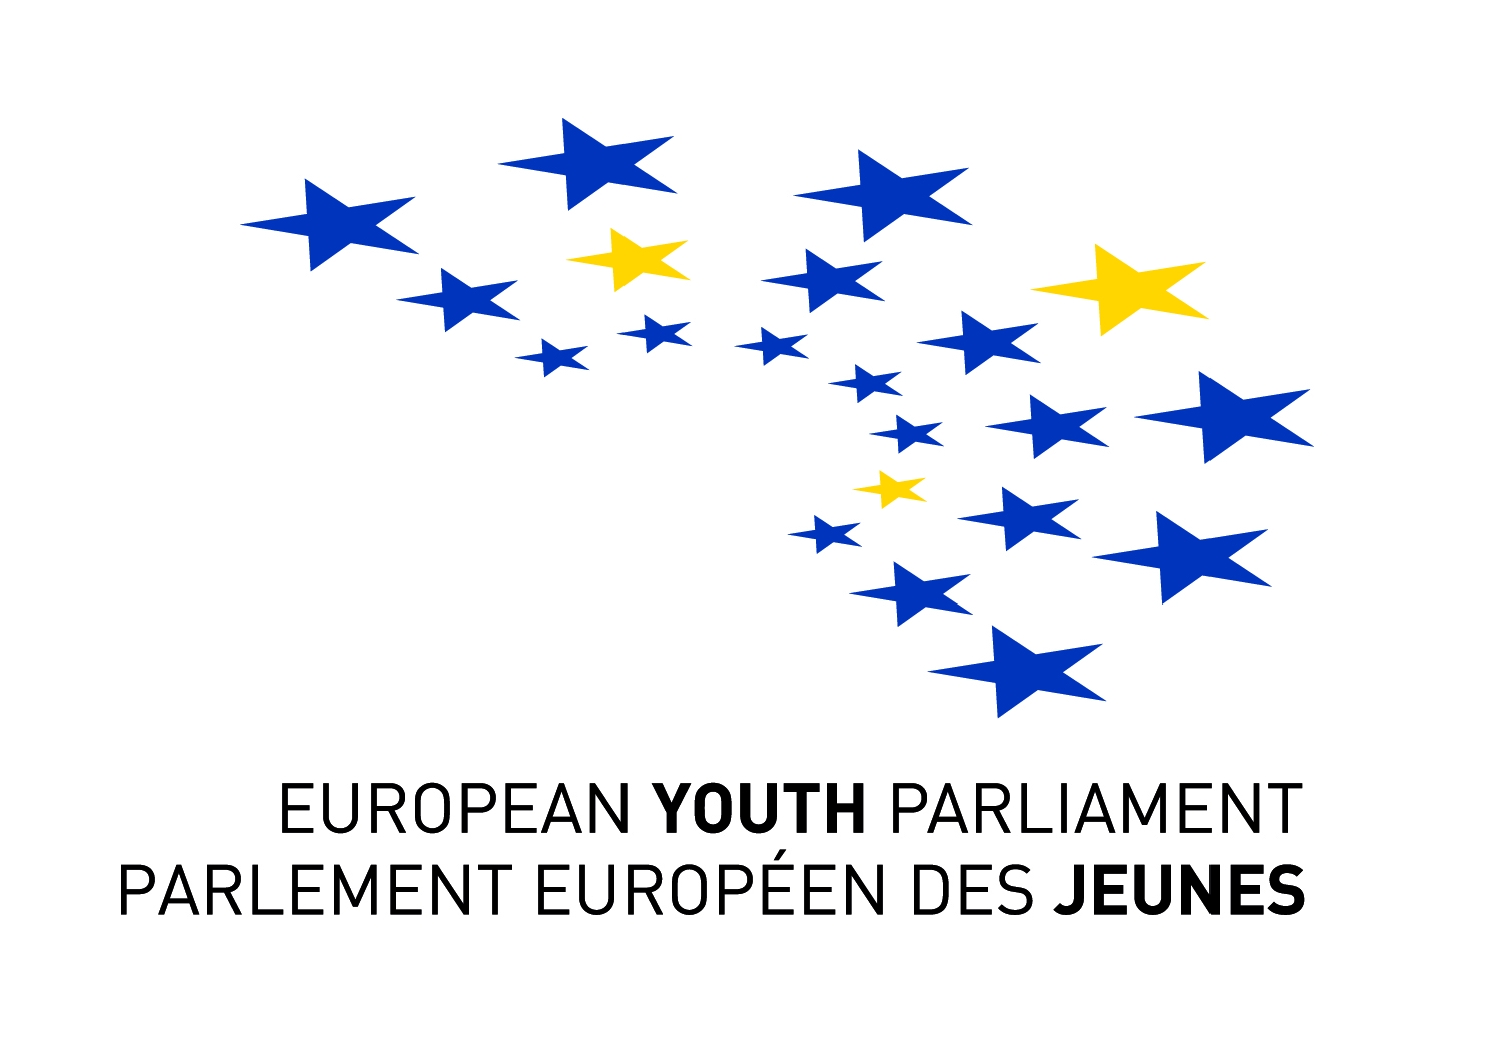 Եվրոպական երիտասարդական պառլամենտն իր առջև նպատակ է դրել գործնականորեն 
պիտանի լինել հայ երիտասարդությանը